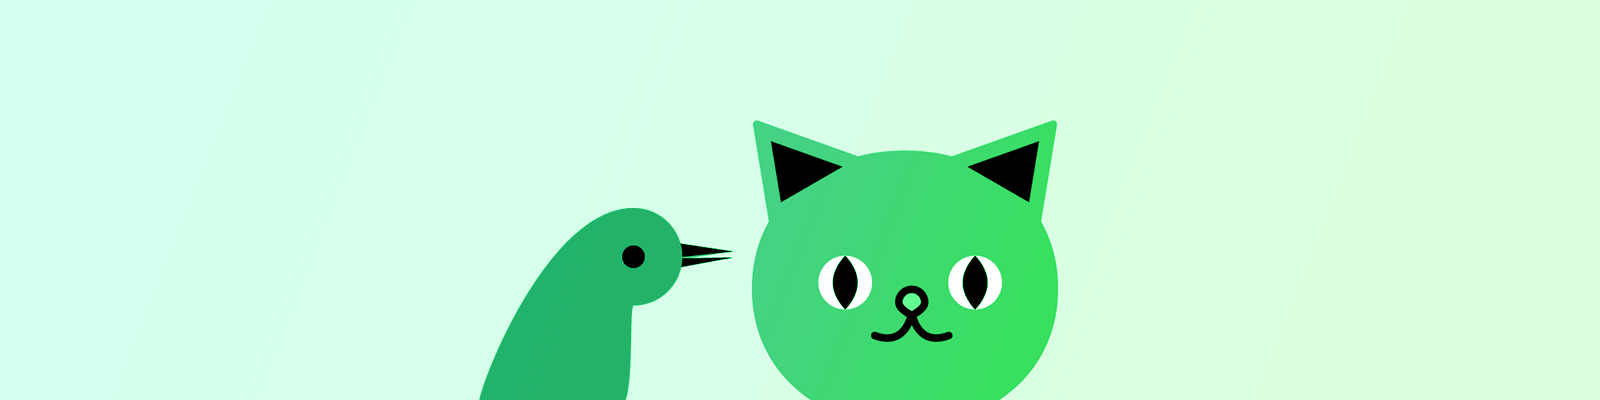 мигающий кот птица зеленый